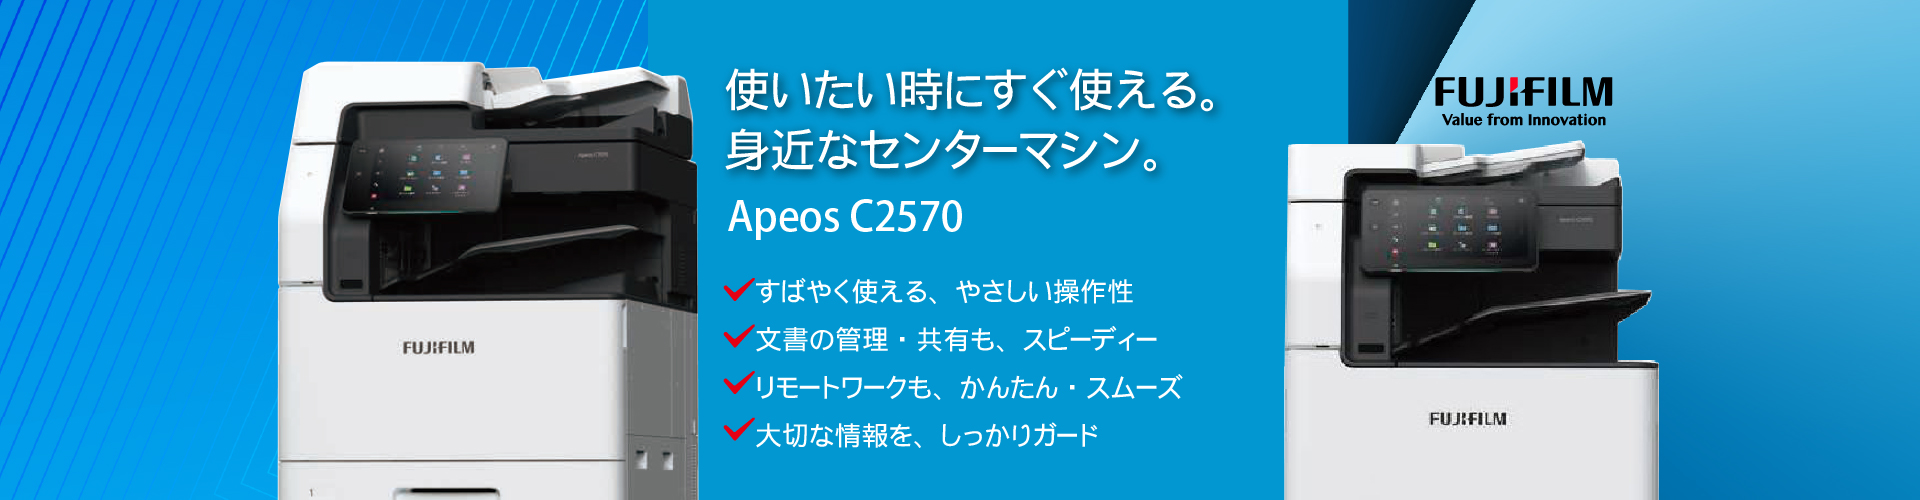 新しい「Apeos」。使いたい時にすぐ使える